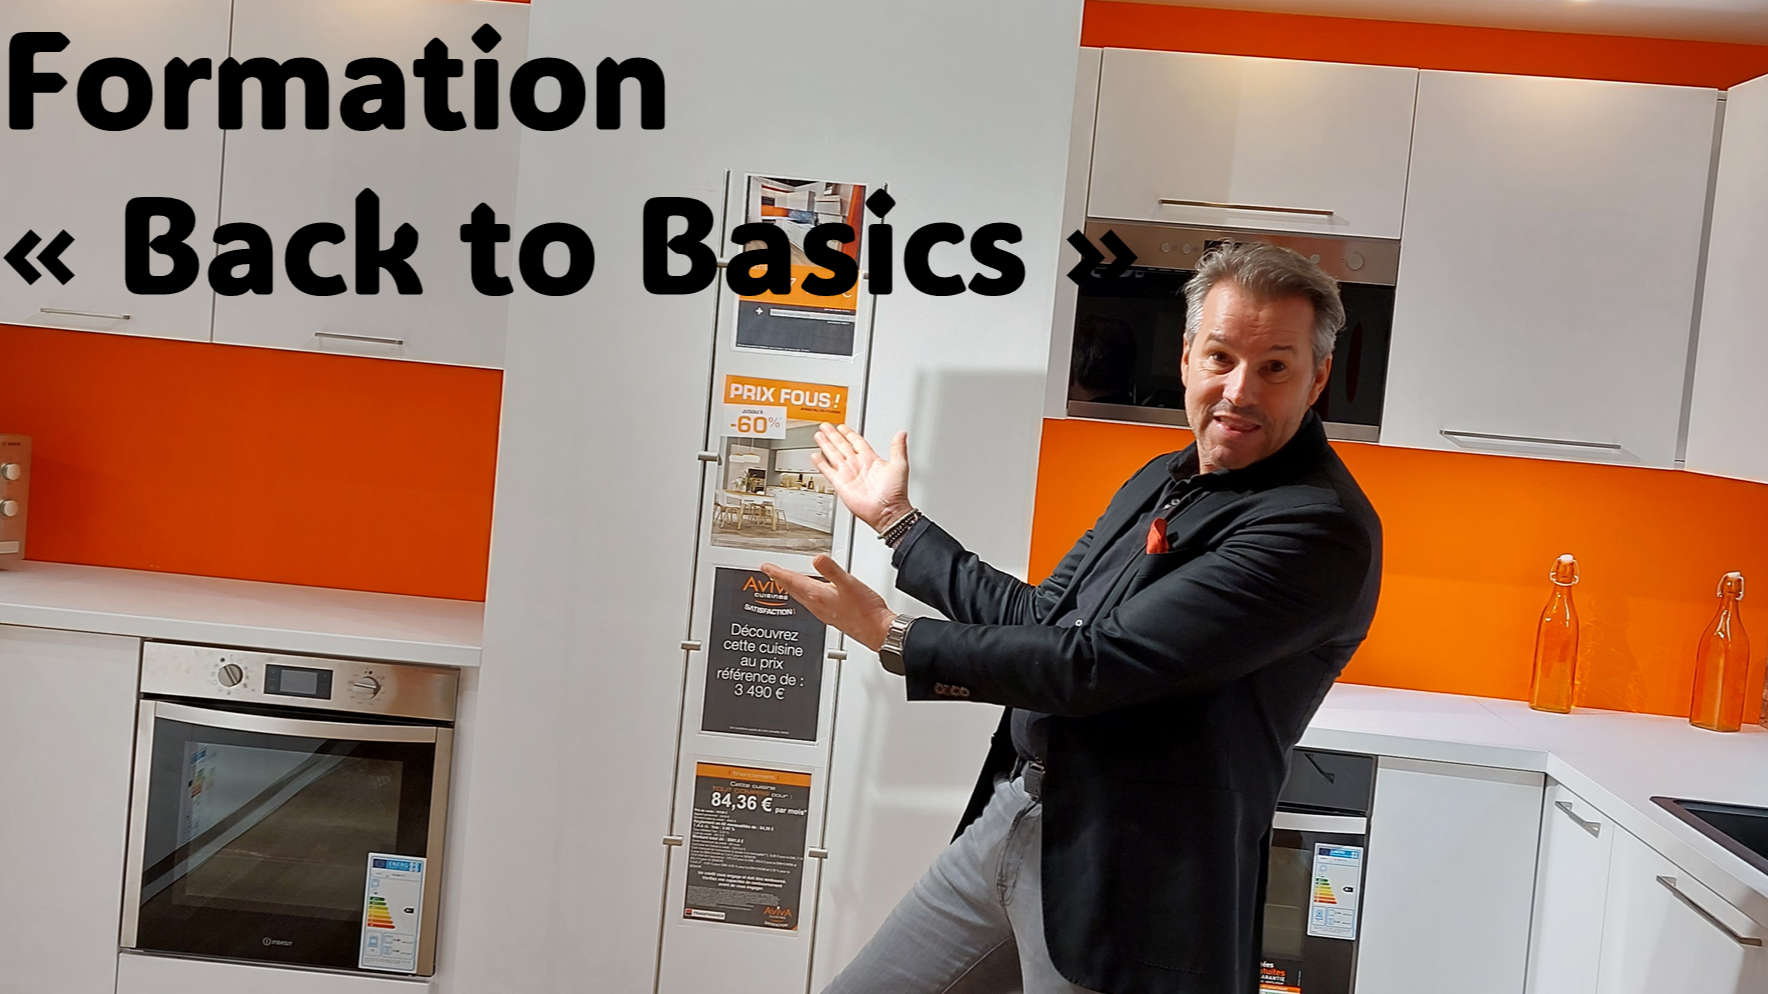 Représentation de la formation : 0-Formation "Back to Basics" 
Retour sur les fondamentaux de la vente